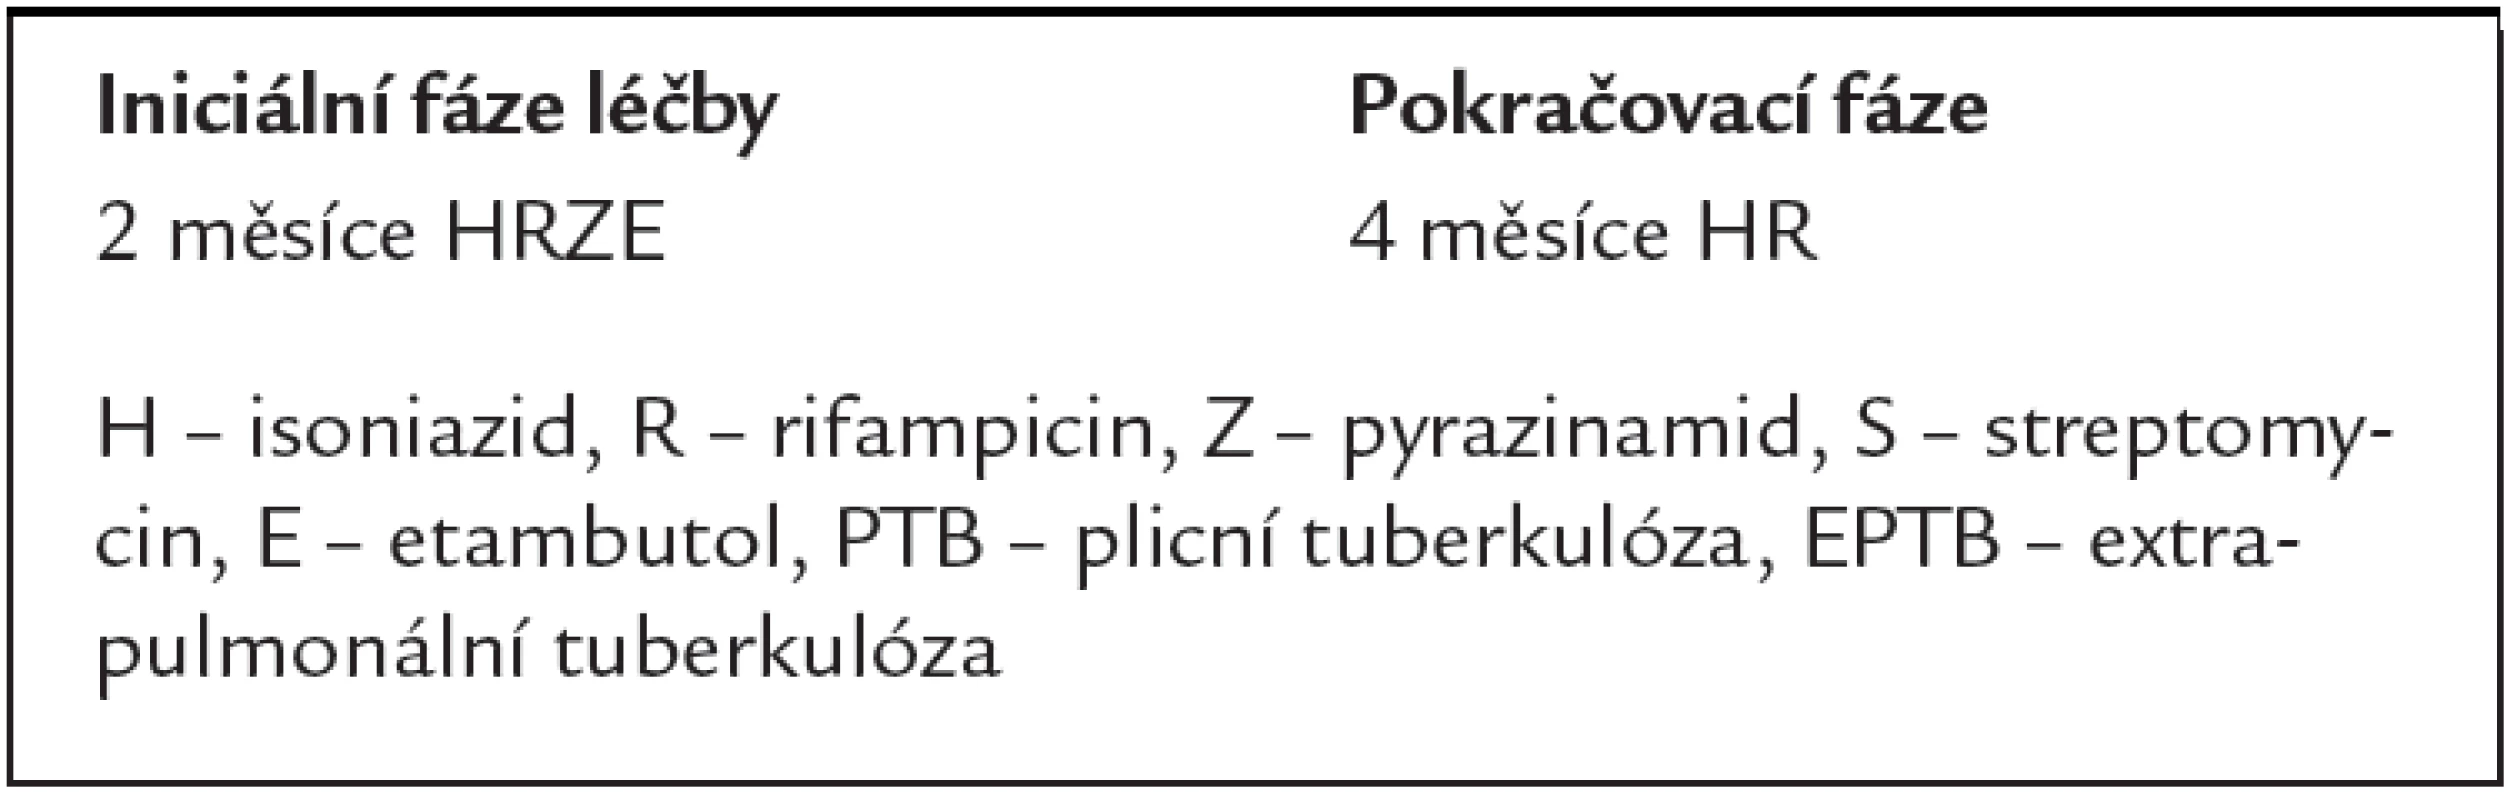 Standardizované režimy pro nové TB pacienty (s předpokládanou nebo známou senzitivitou na AT).